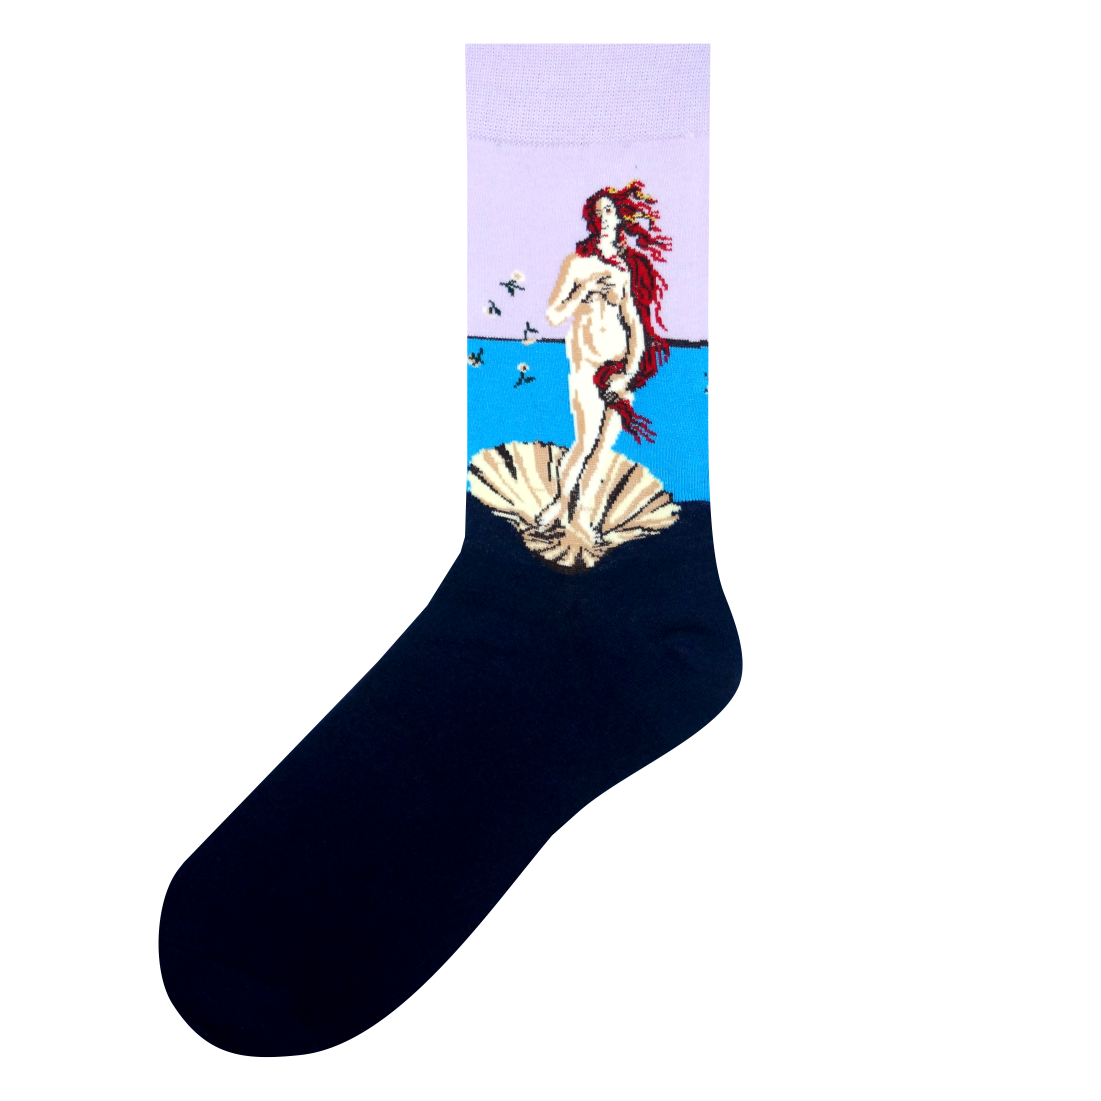 Medias locas calcetines de diseño nacimiento de venus Freaky Socks medias el nacimiento de venus